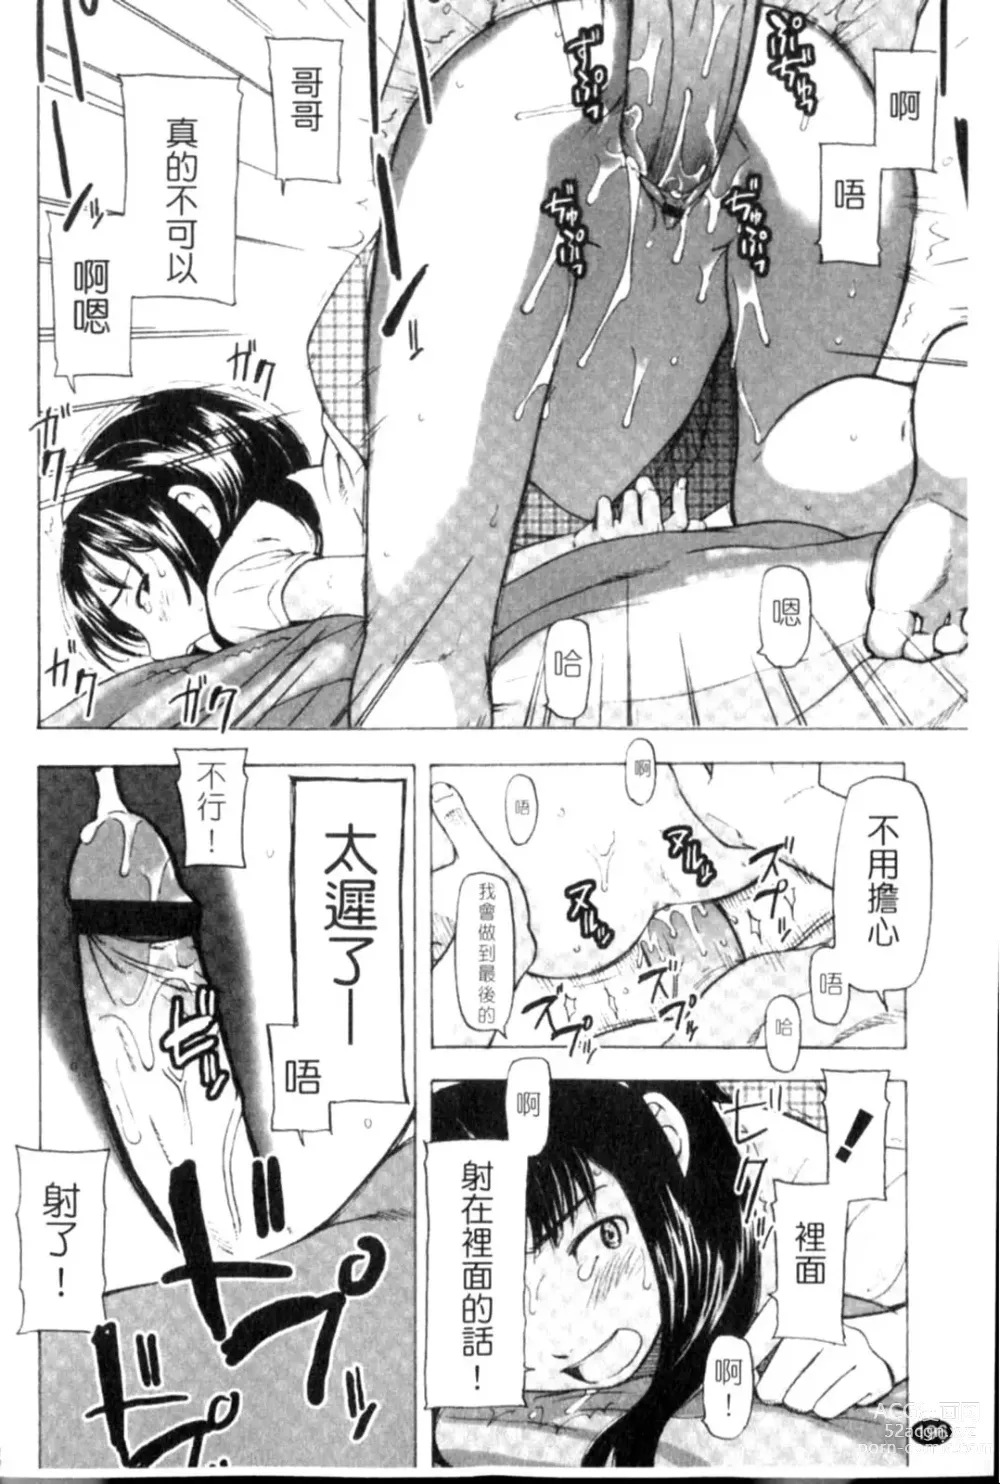 Page 196 of manga Porno Graffitti